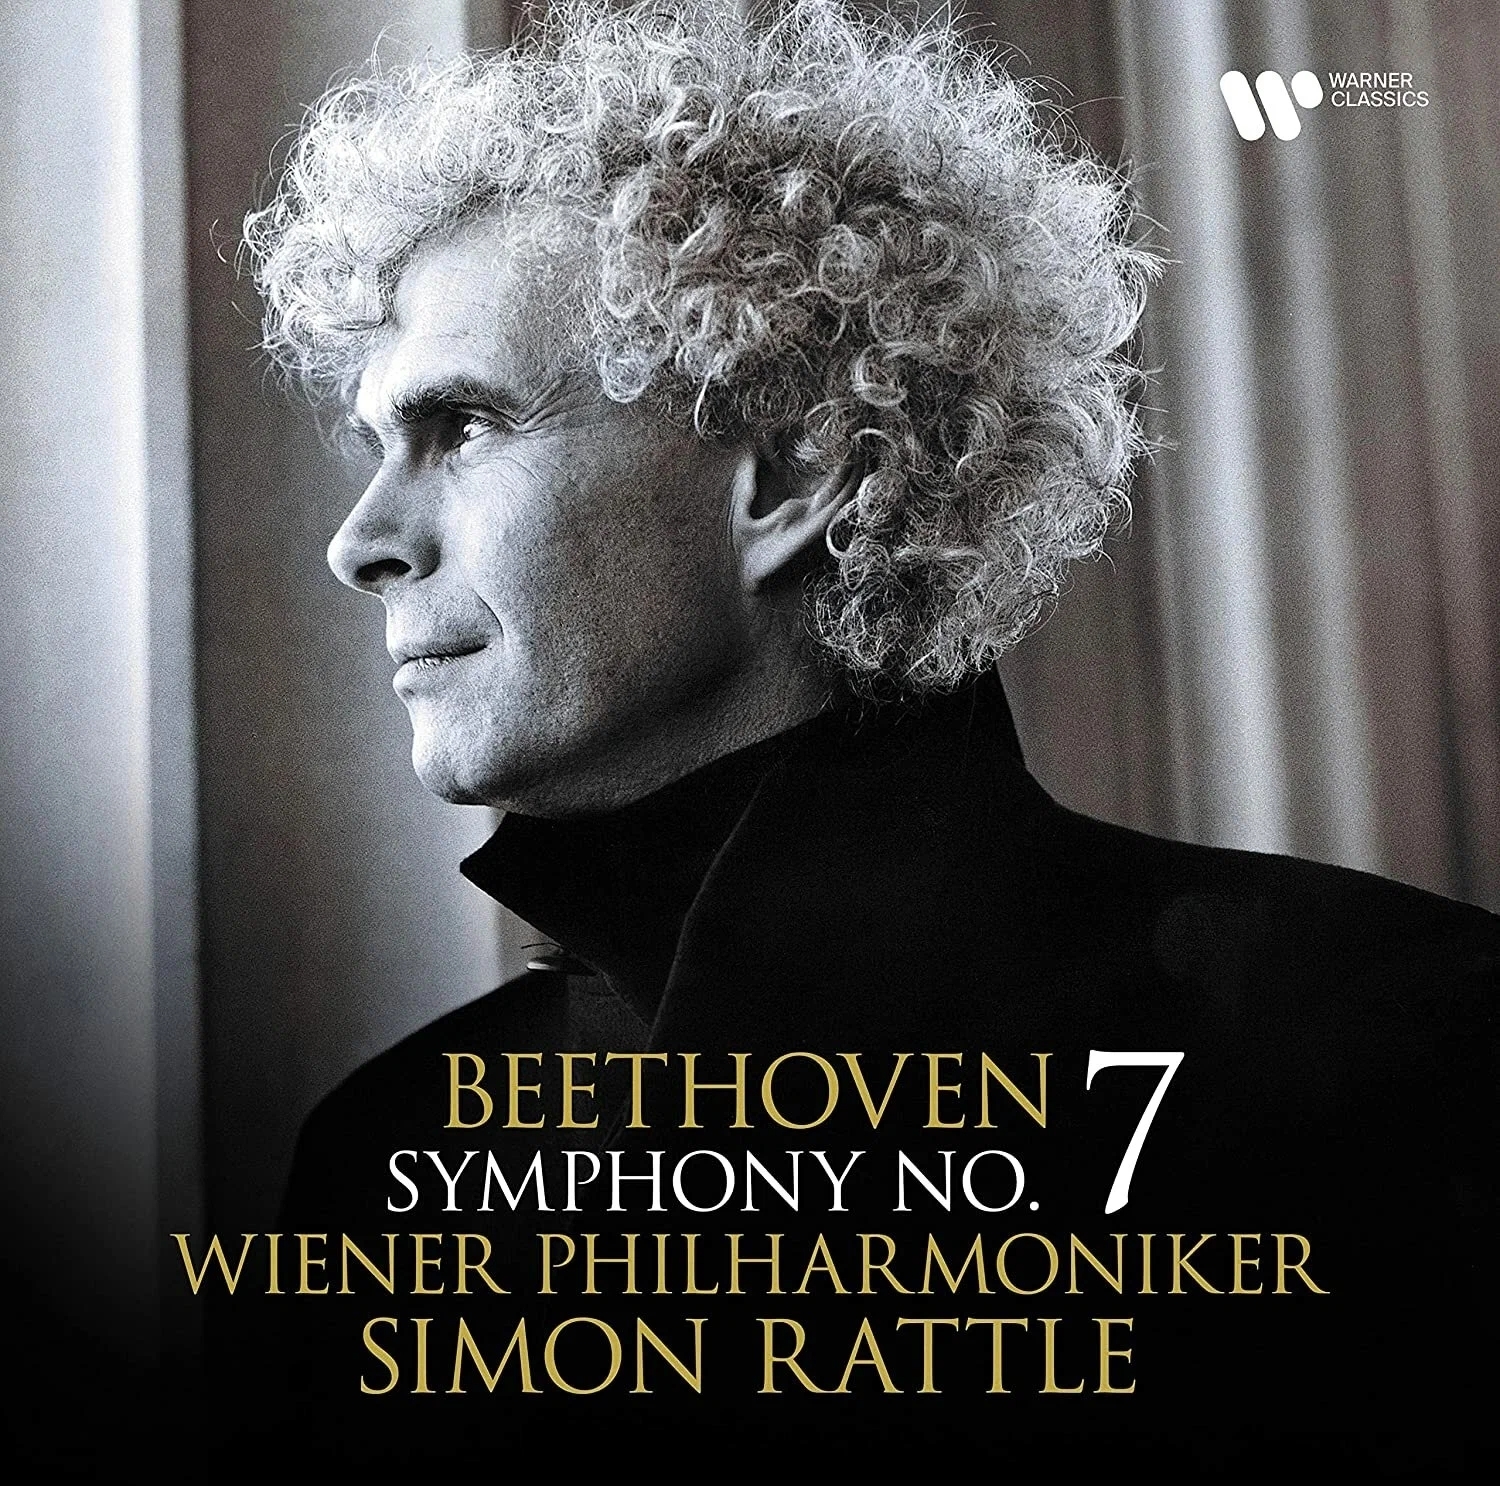 Виниловая Пластинка Rattle, Simon / Wiener Philharmoniker, Beethoven: Symphony No. 7 (5054197376481)